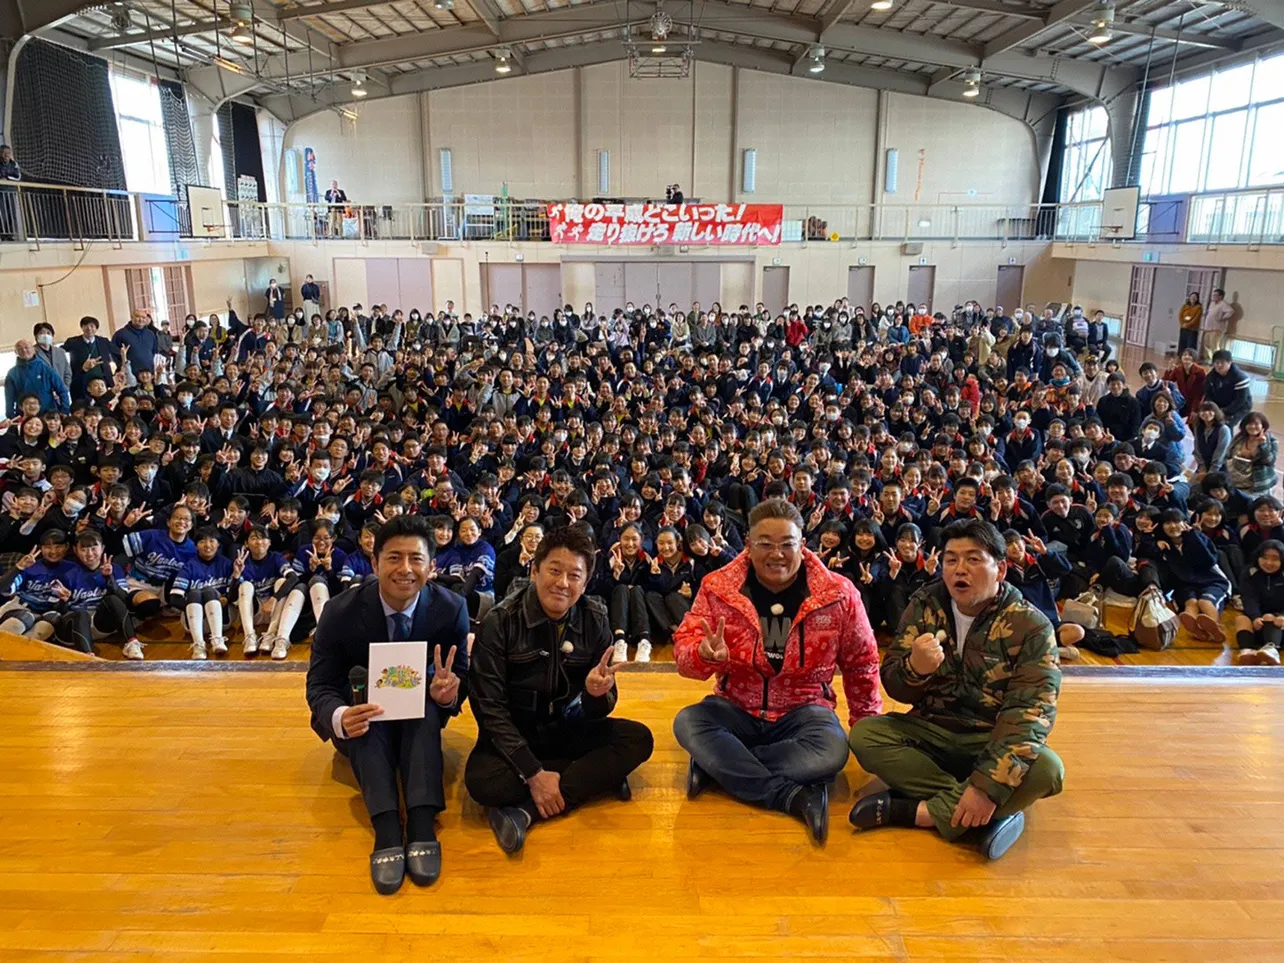 【写真を見る】伊達みきおの母校にて、超満員な生徒たちと撮った記念写真